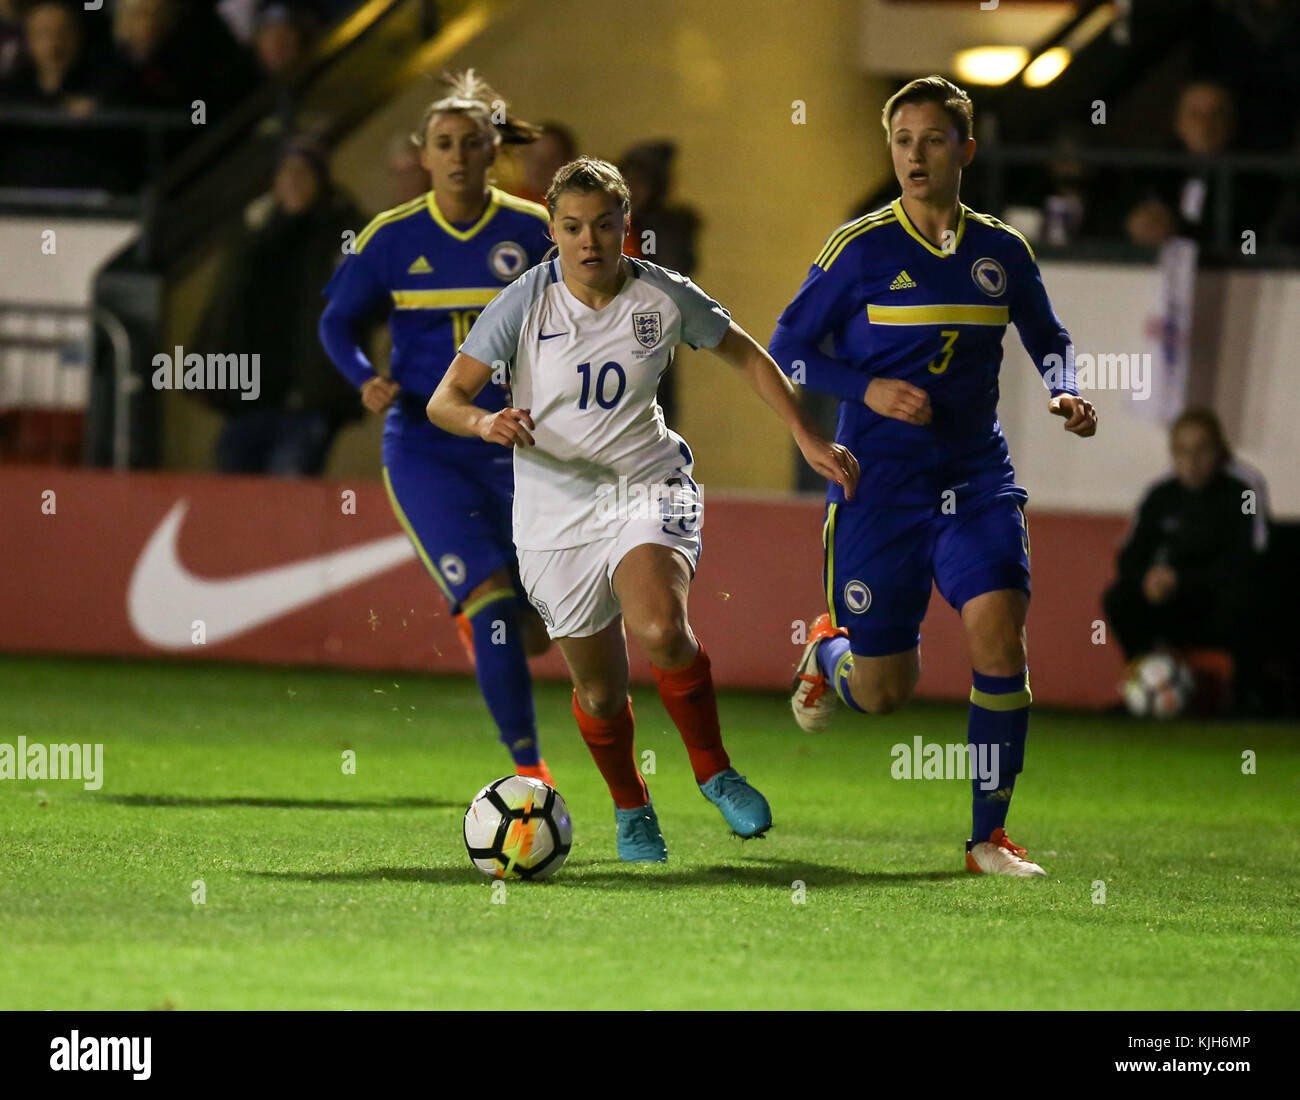 L'équipe féminine de l'Angleterre, les lionnes, jouant la Bosnie et Herzégovine, la FIFA Women's World Cup tour de qualification, novembre 2017. Fran Kirby passe devant l'opposition. Banque D'Images